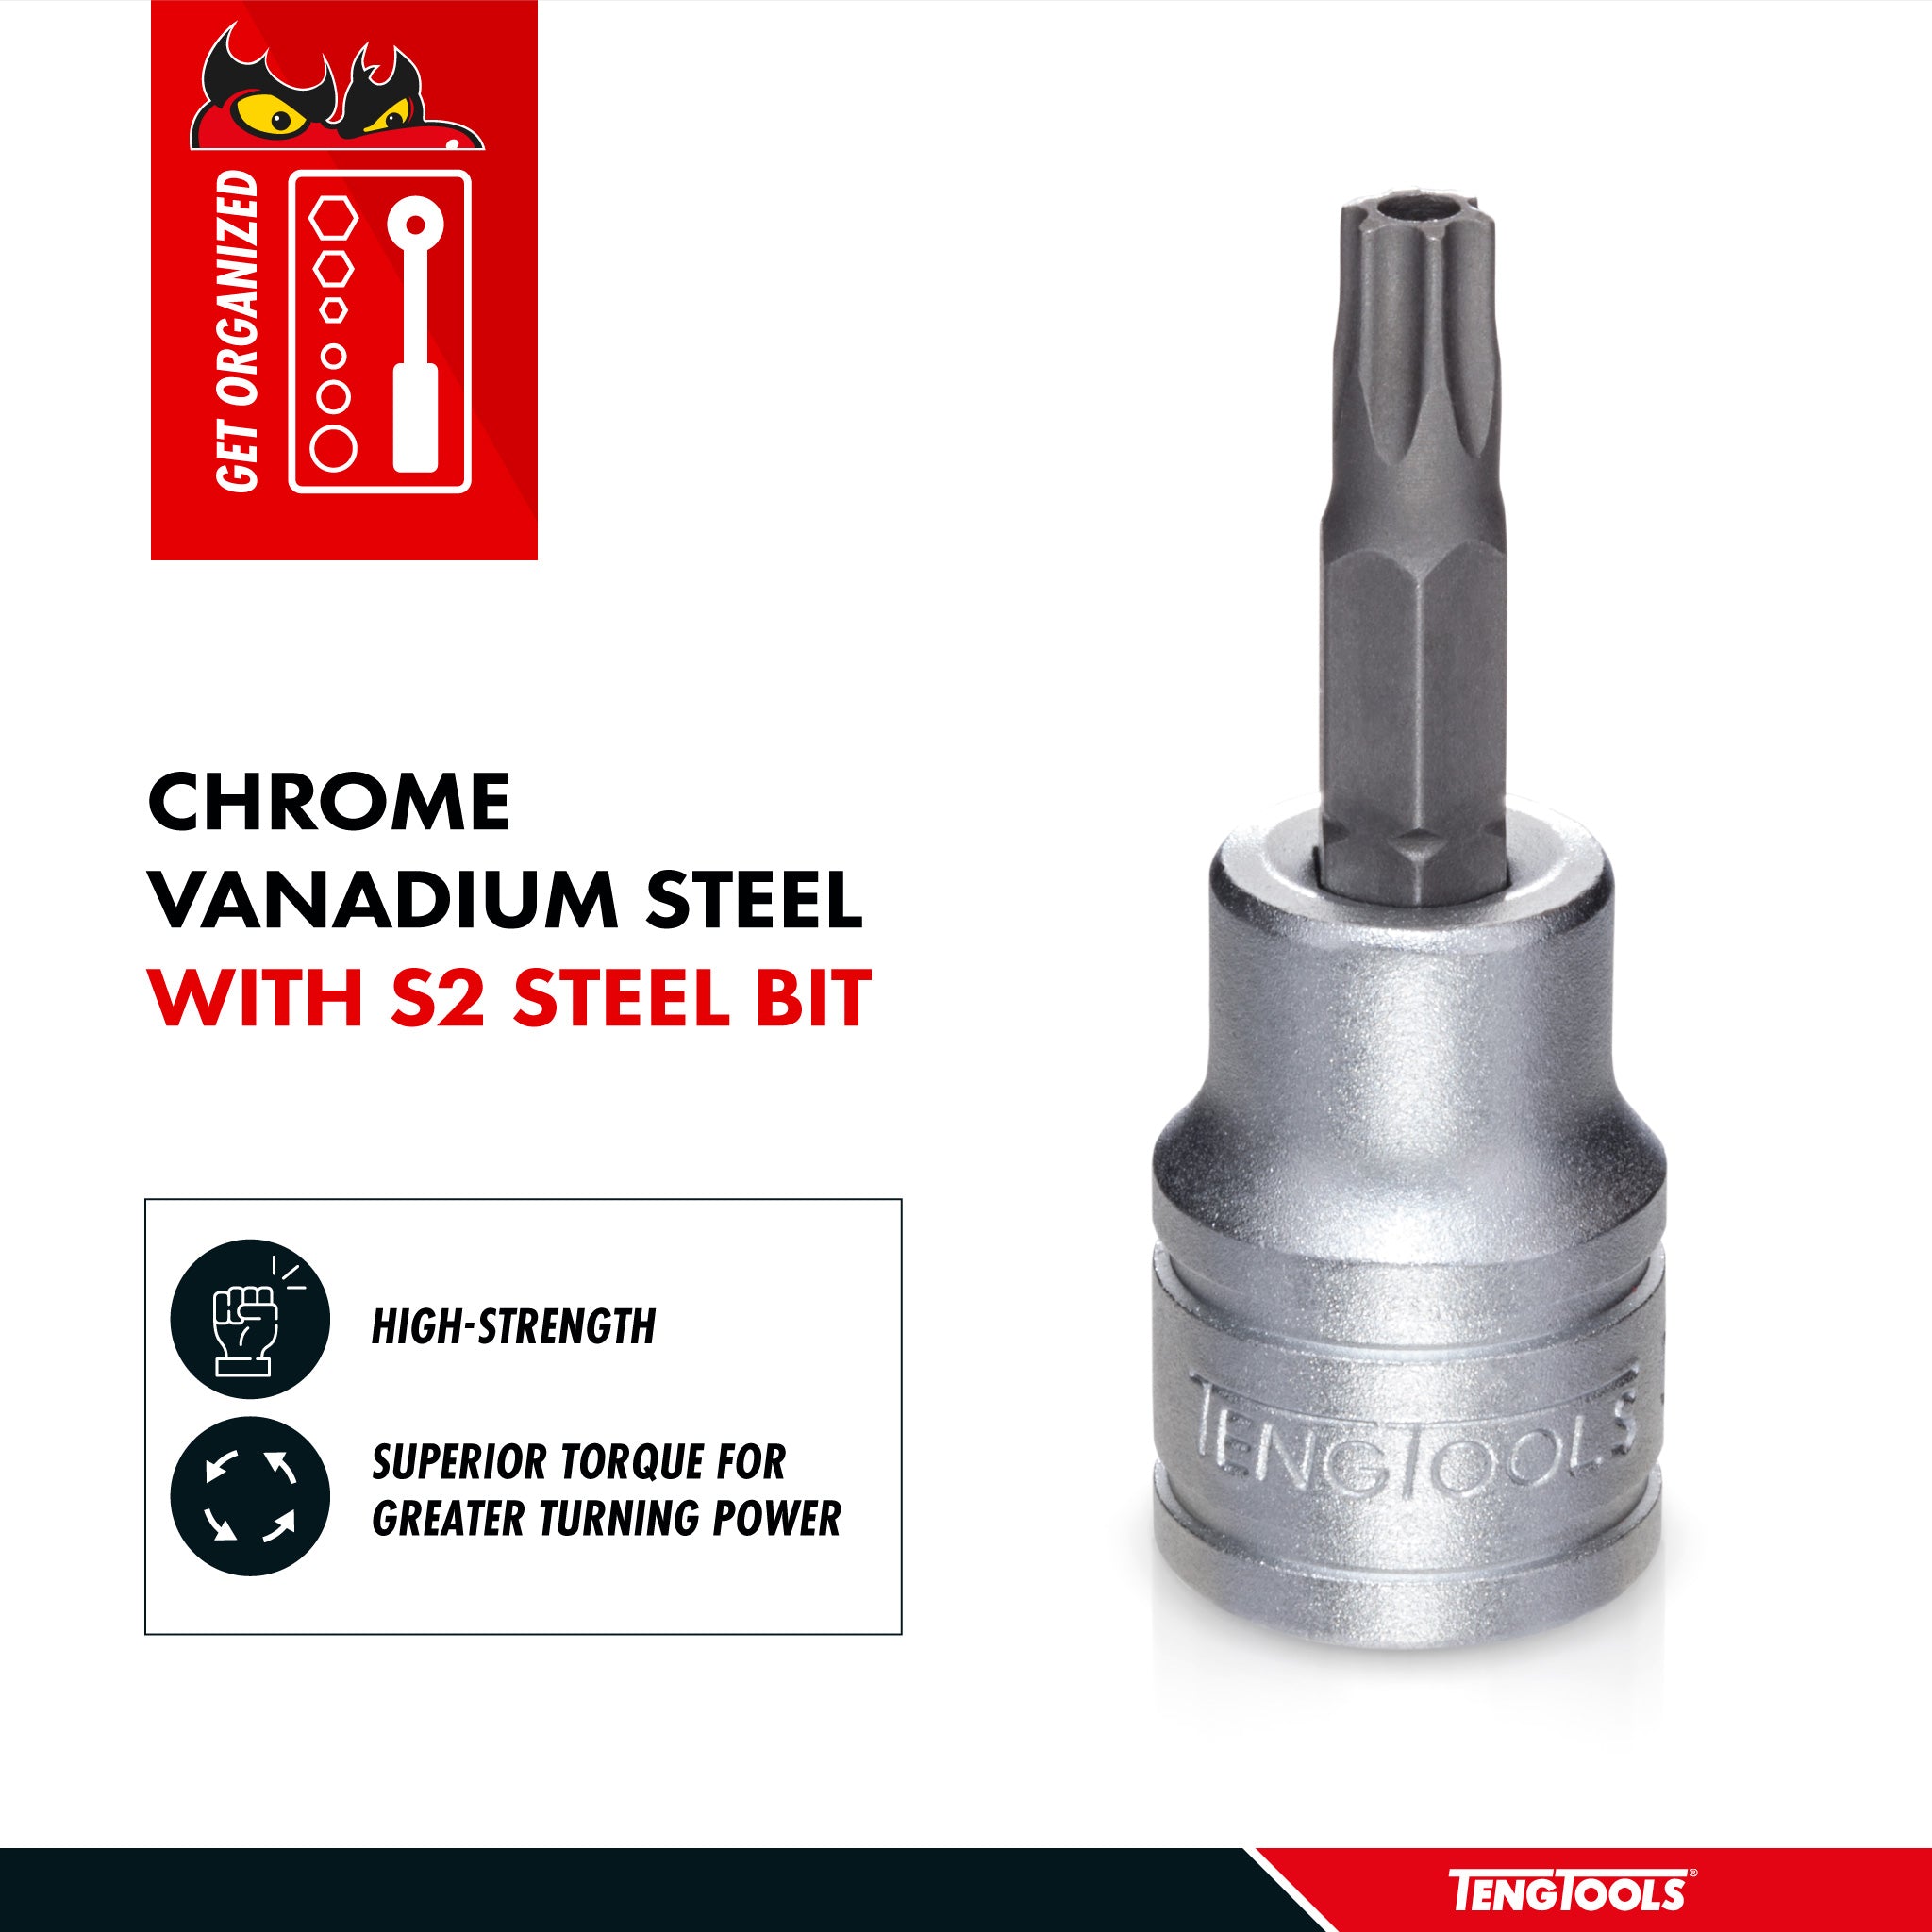 Teng Tools 1/2 Inch Drive Tamper Proof Torx TPX Chrome Vanadium Sockets - TPX40